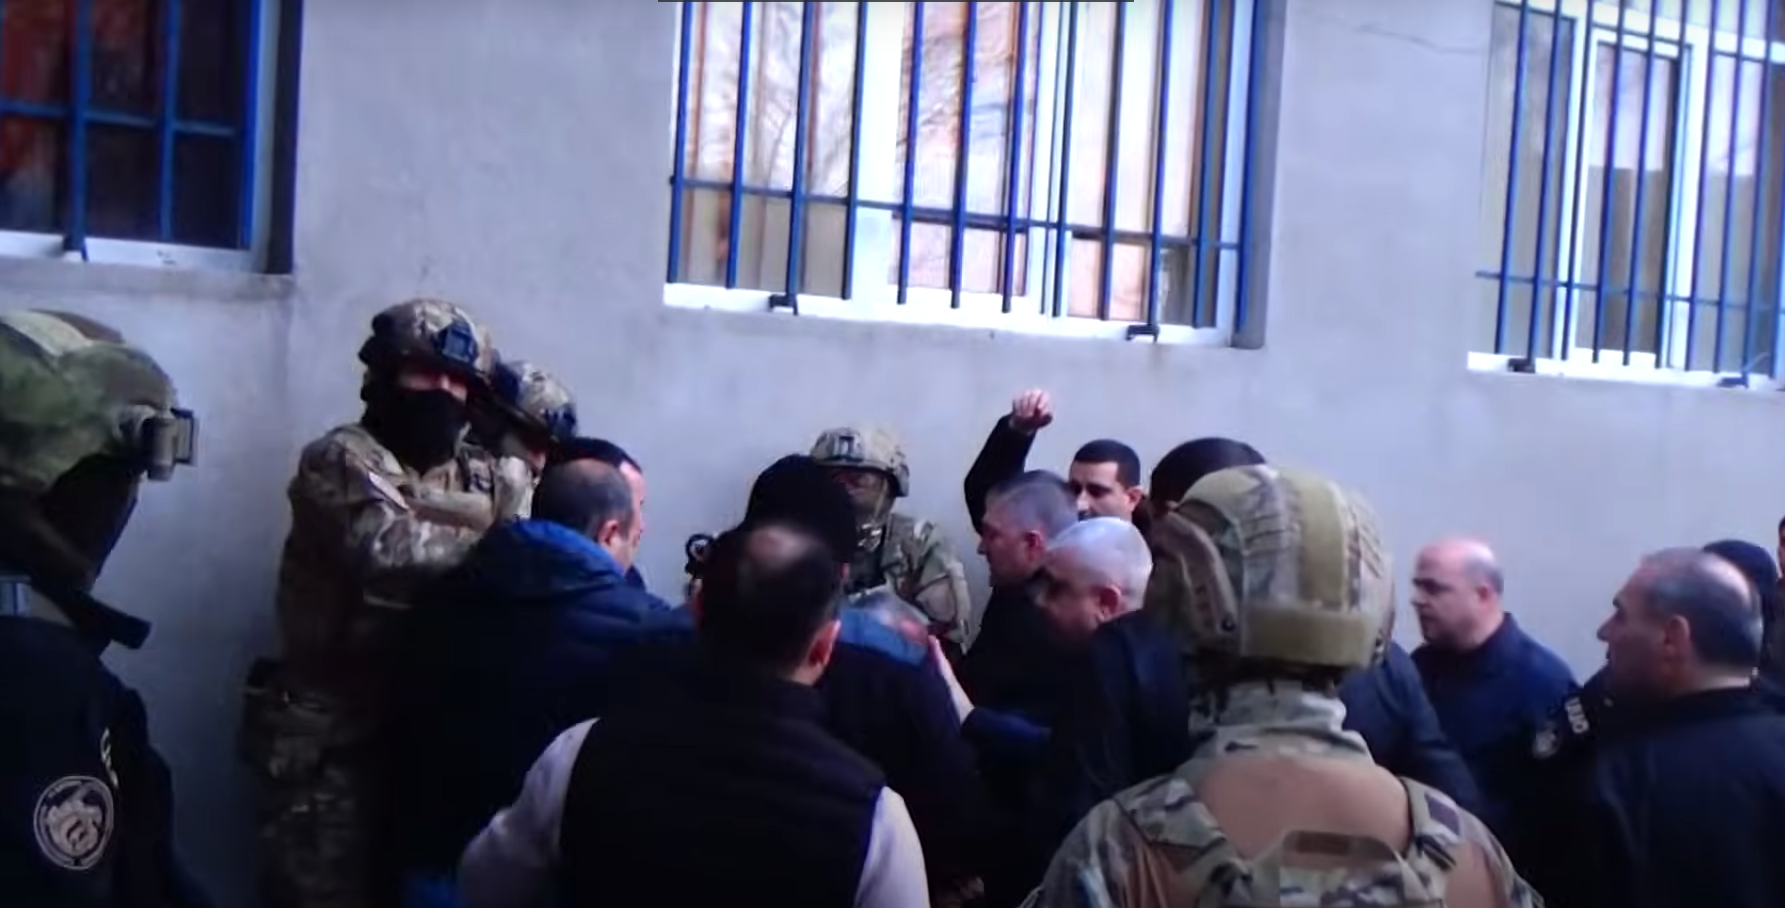 Ոստիկանության Երևան քաղաքի վարչության Նոր Նորքի բաժնում առերևույթ ահաբեկչության վերաբերյալ վարույթով ձերբակալված երեք անձանցից երկուսը կալանավորվել են